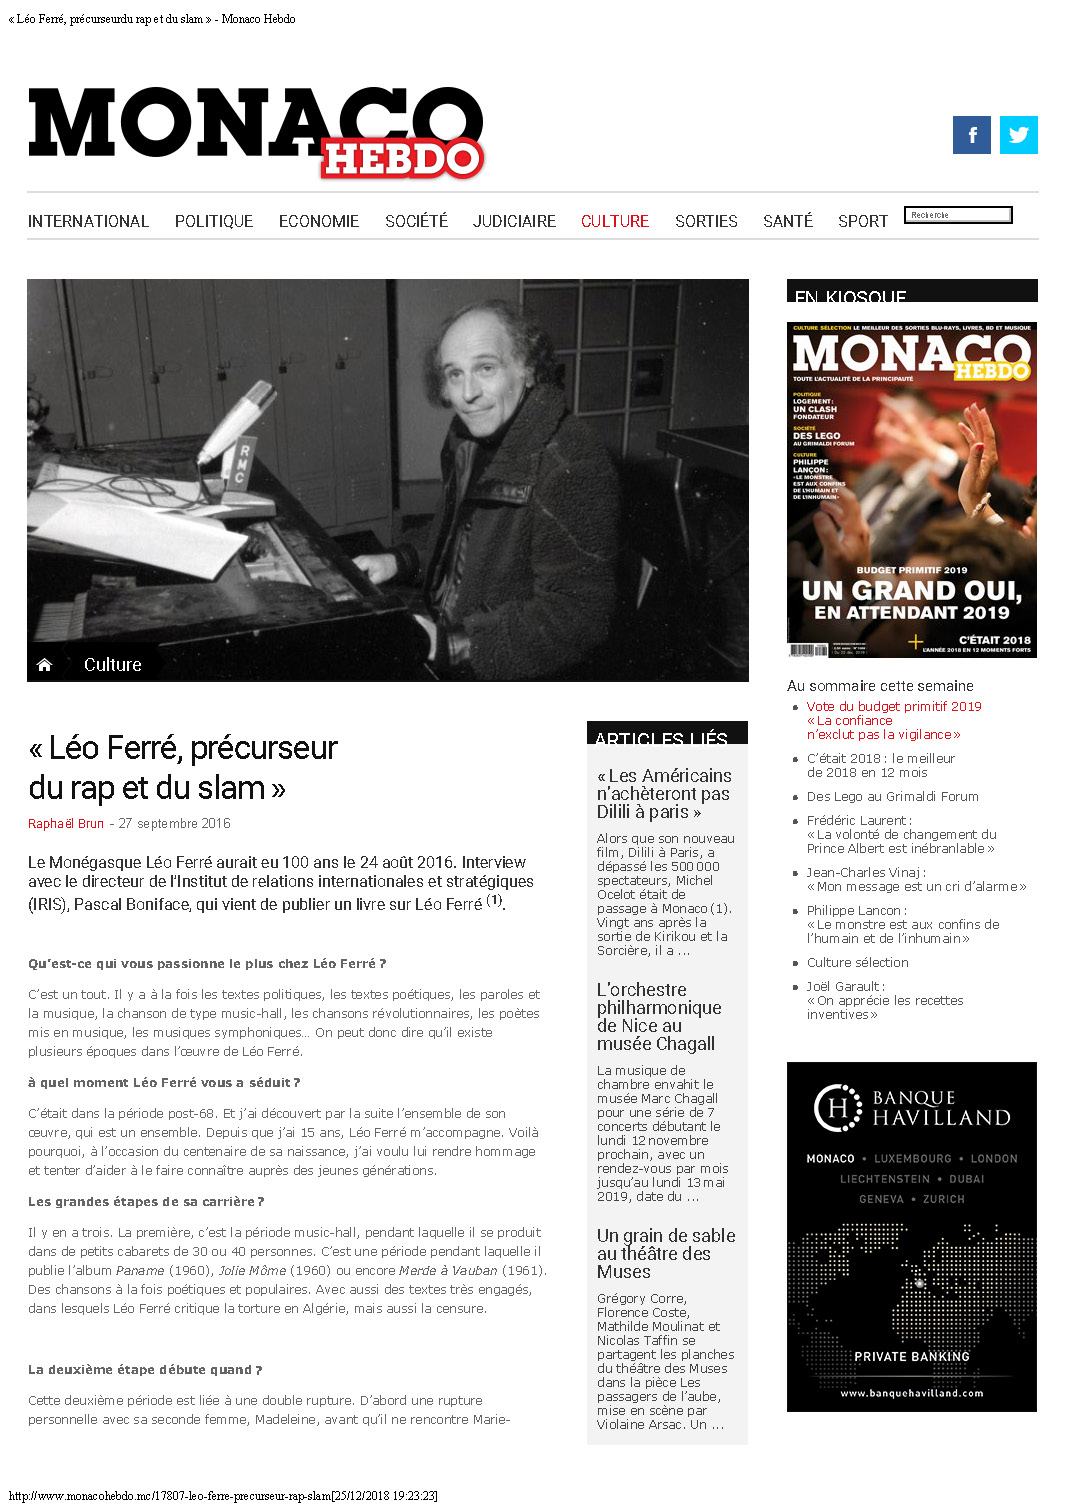 27/09/2016 Monaco-Hebdo Léo Ferré précurseur du rap et du slam 